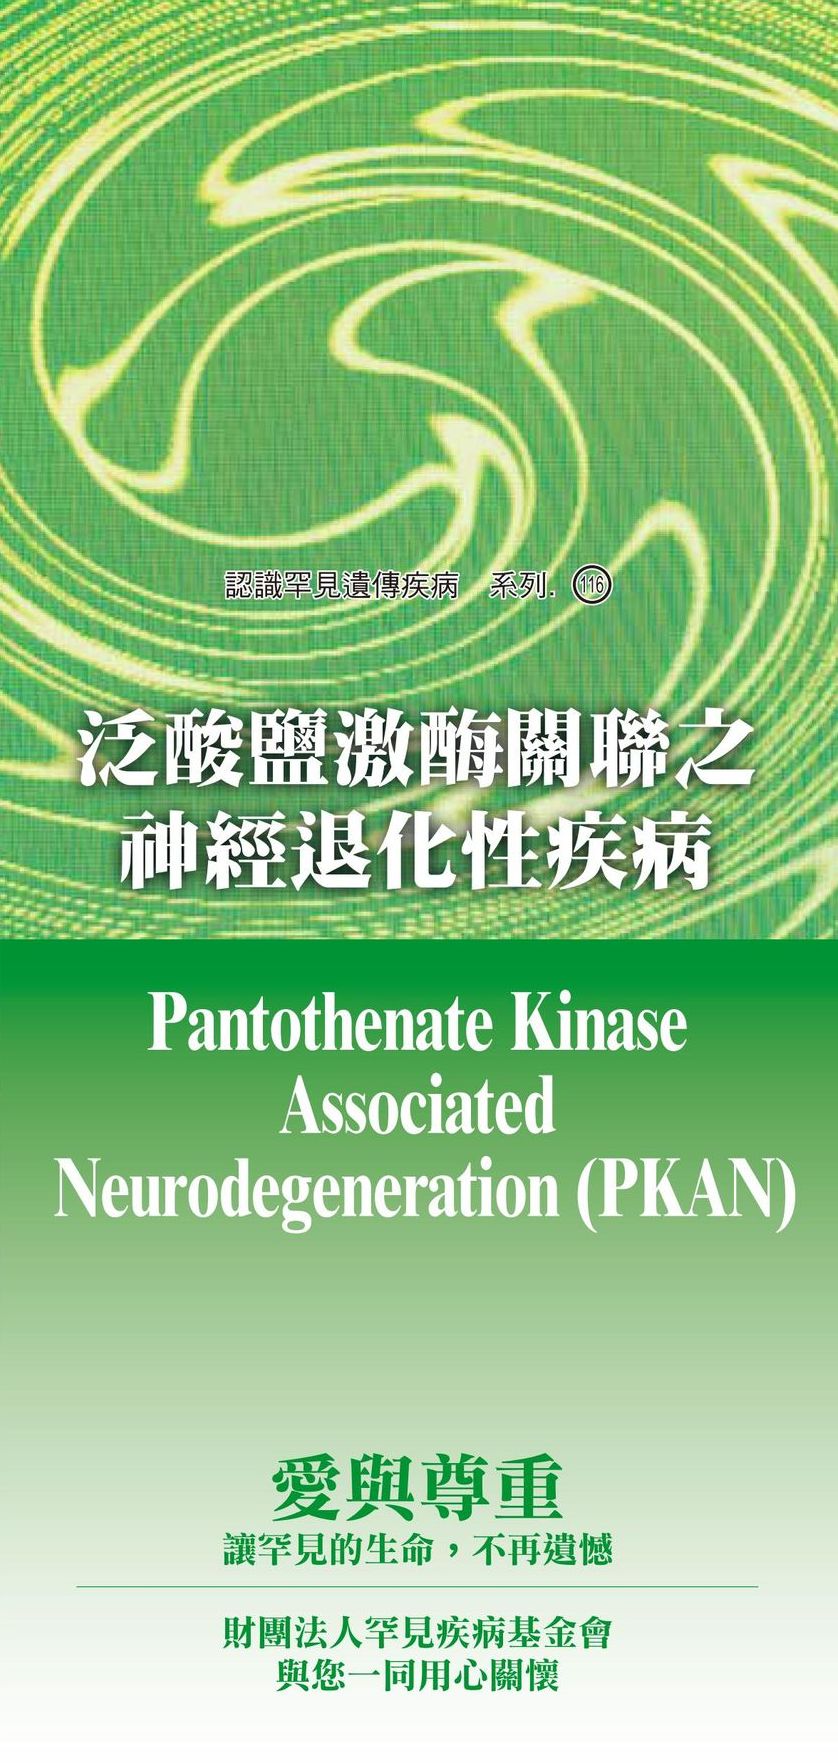 泛酸鹽激?關聯之神經退化性疾病  ( Pantothenate Kinase Associated Neurodegeneration )文章照片